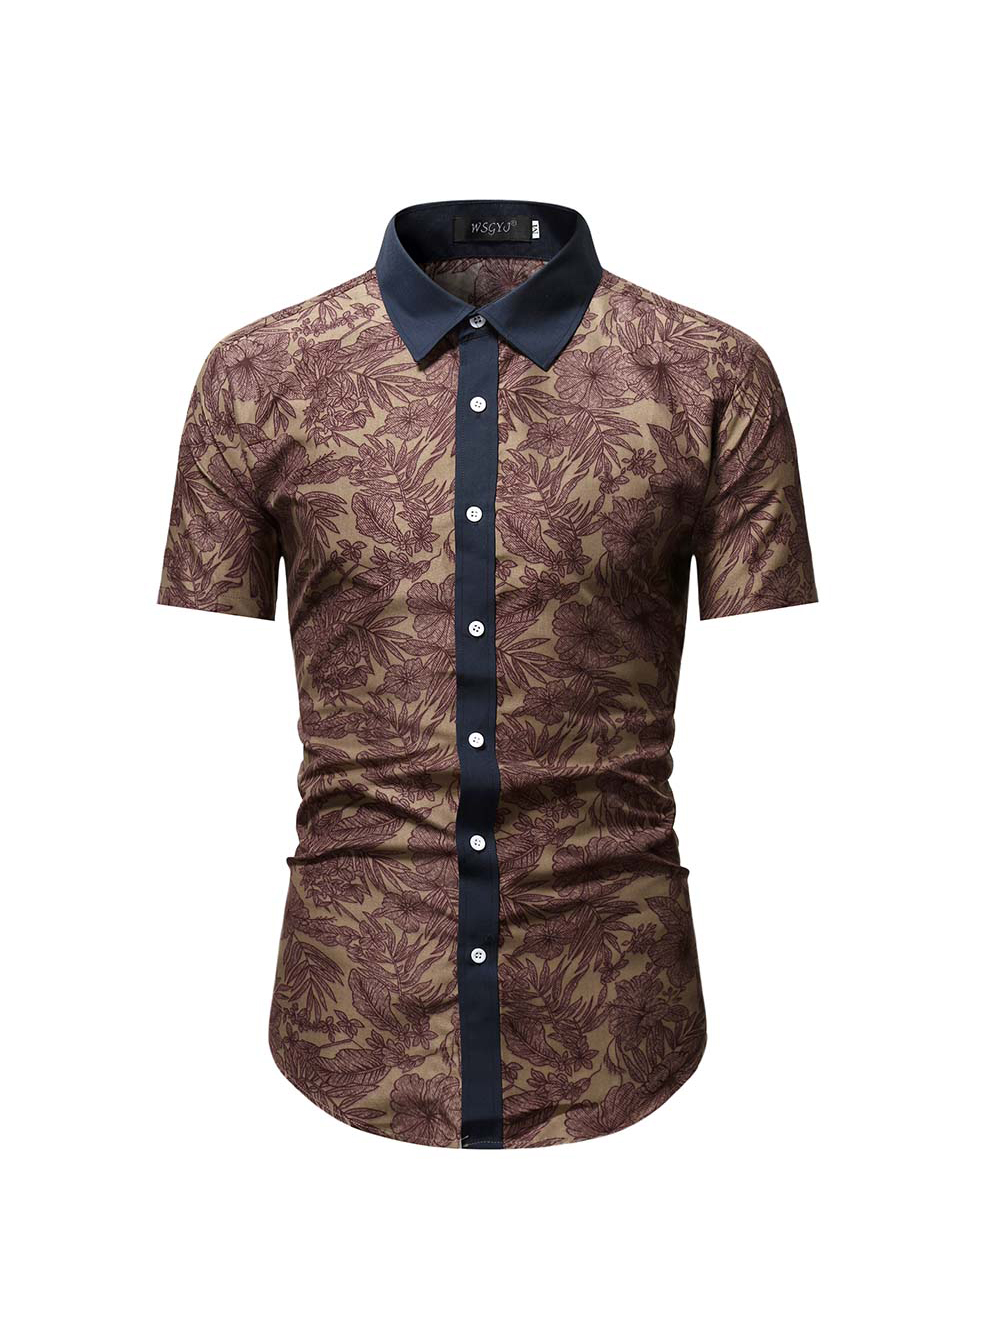 Wholesale Business Button Up Short Sleeve Men Shirts RZO051250 | Wholesale7